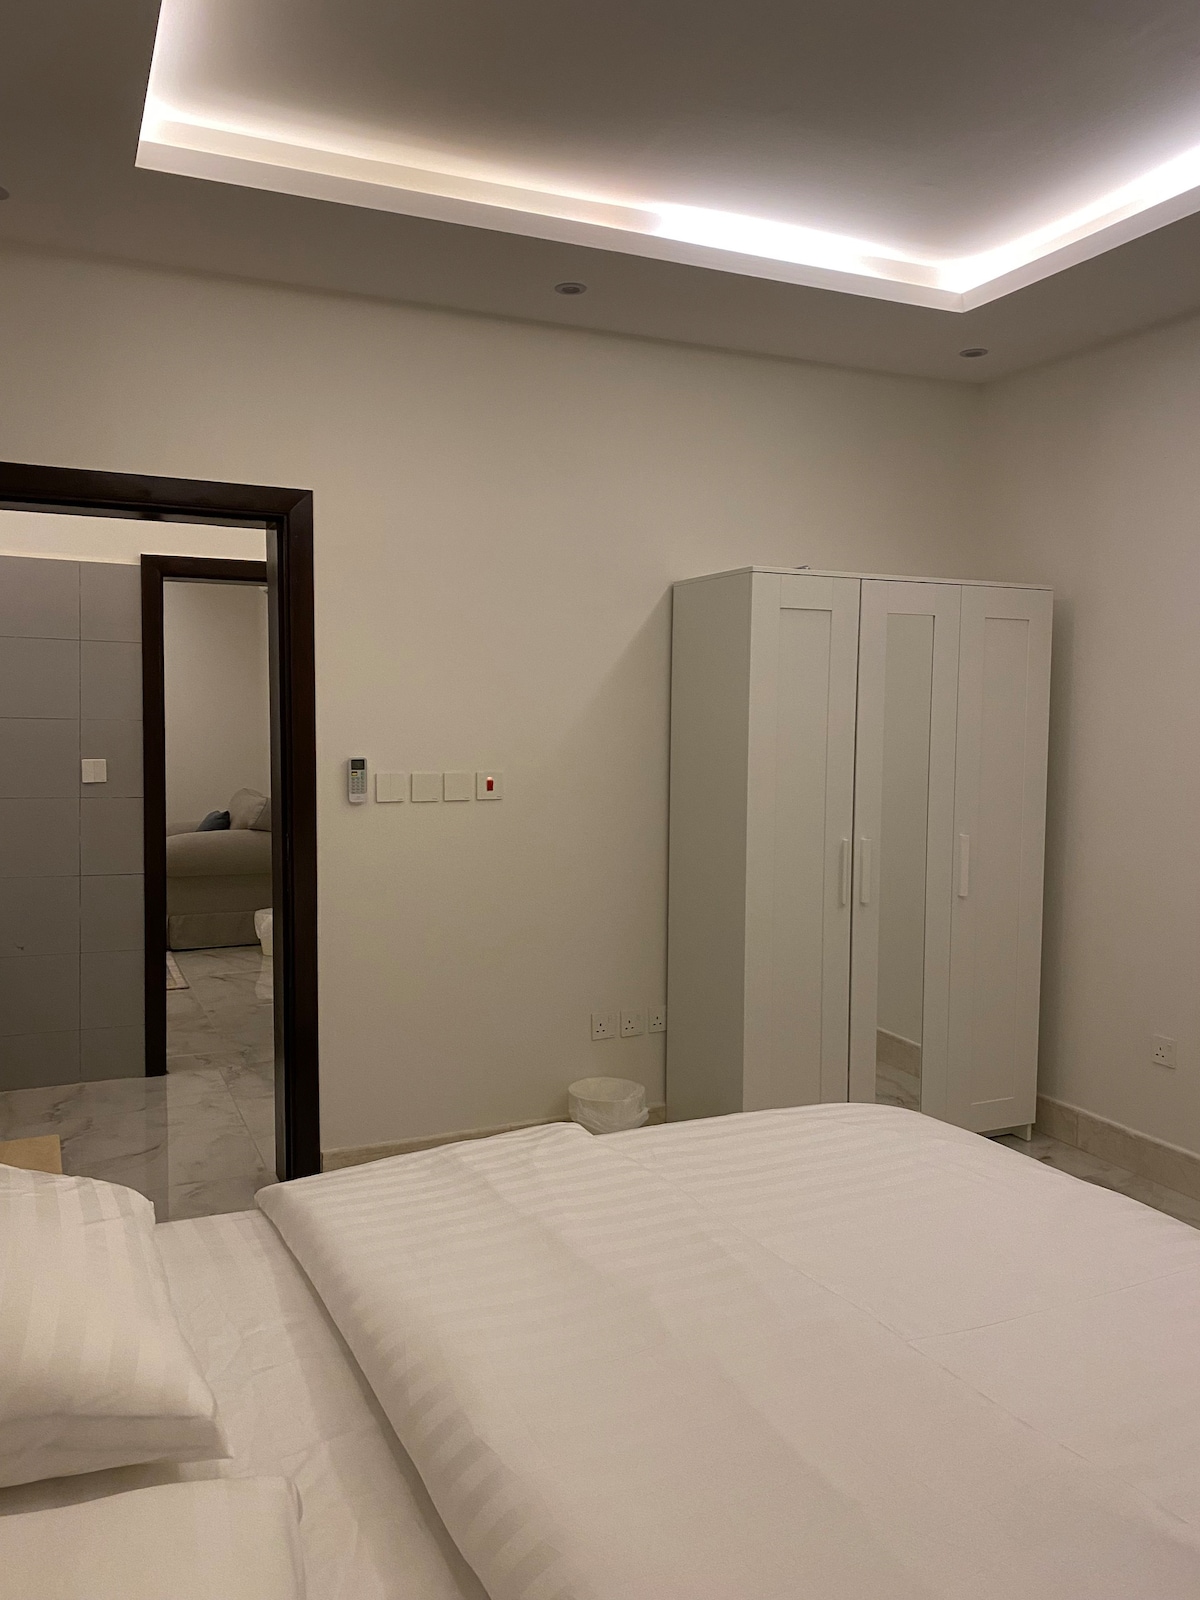 吉达（ Jeddah ）「加大双人床」一居室公寓